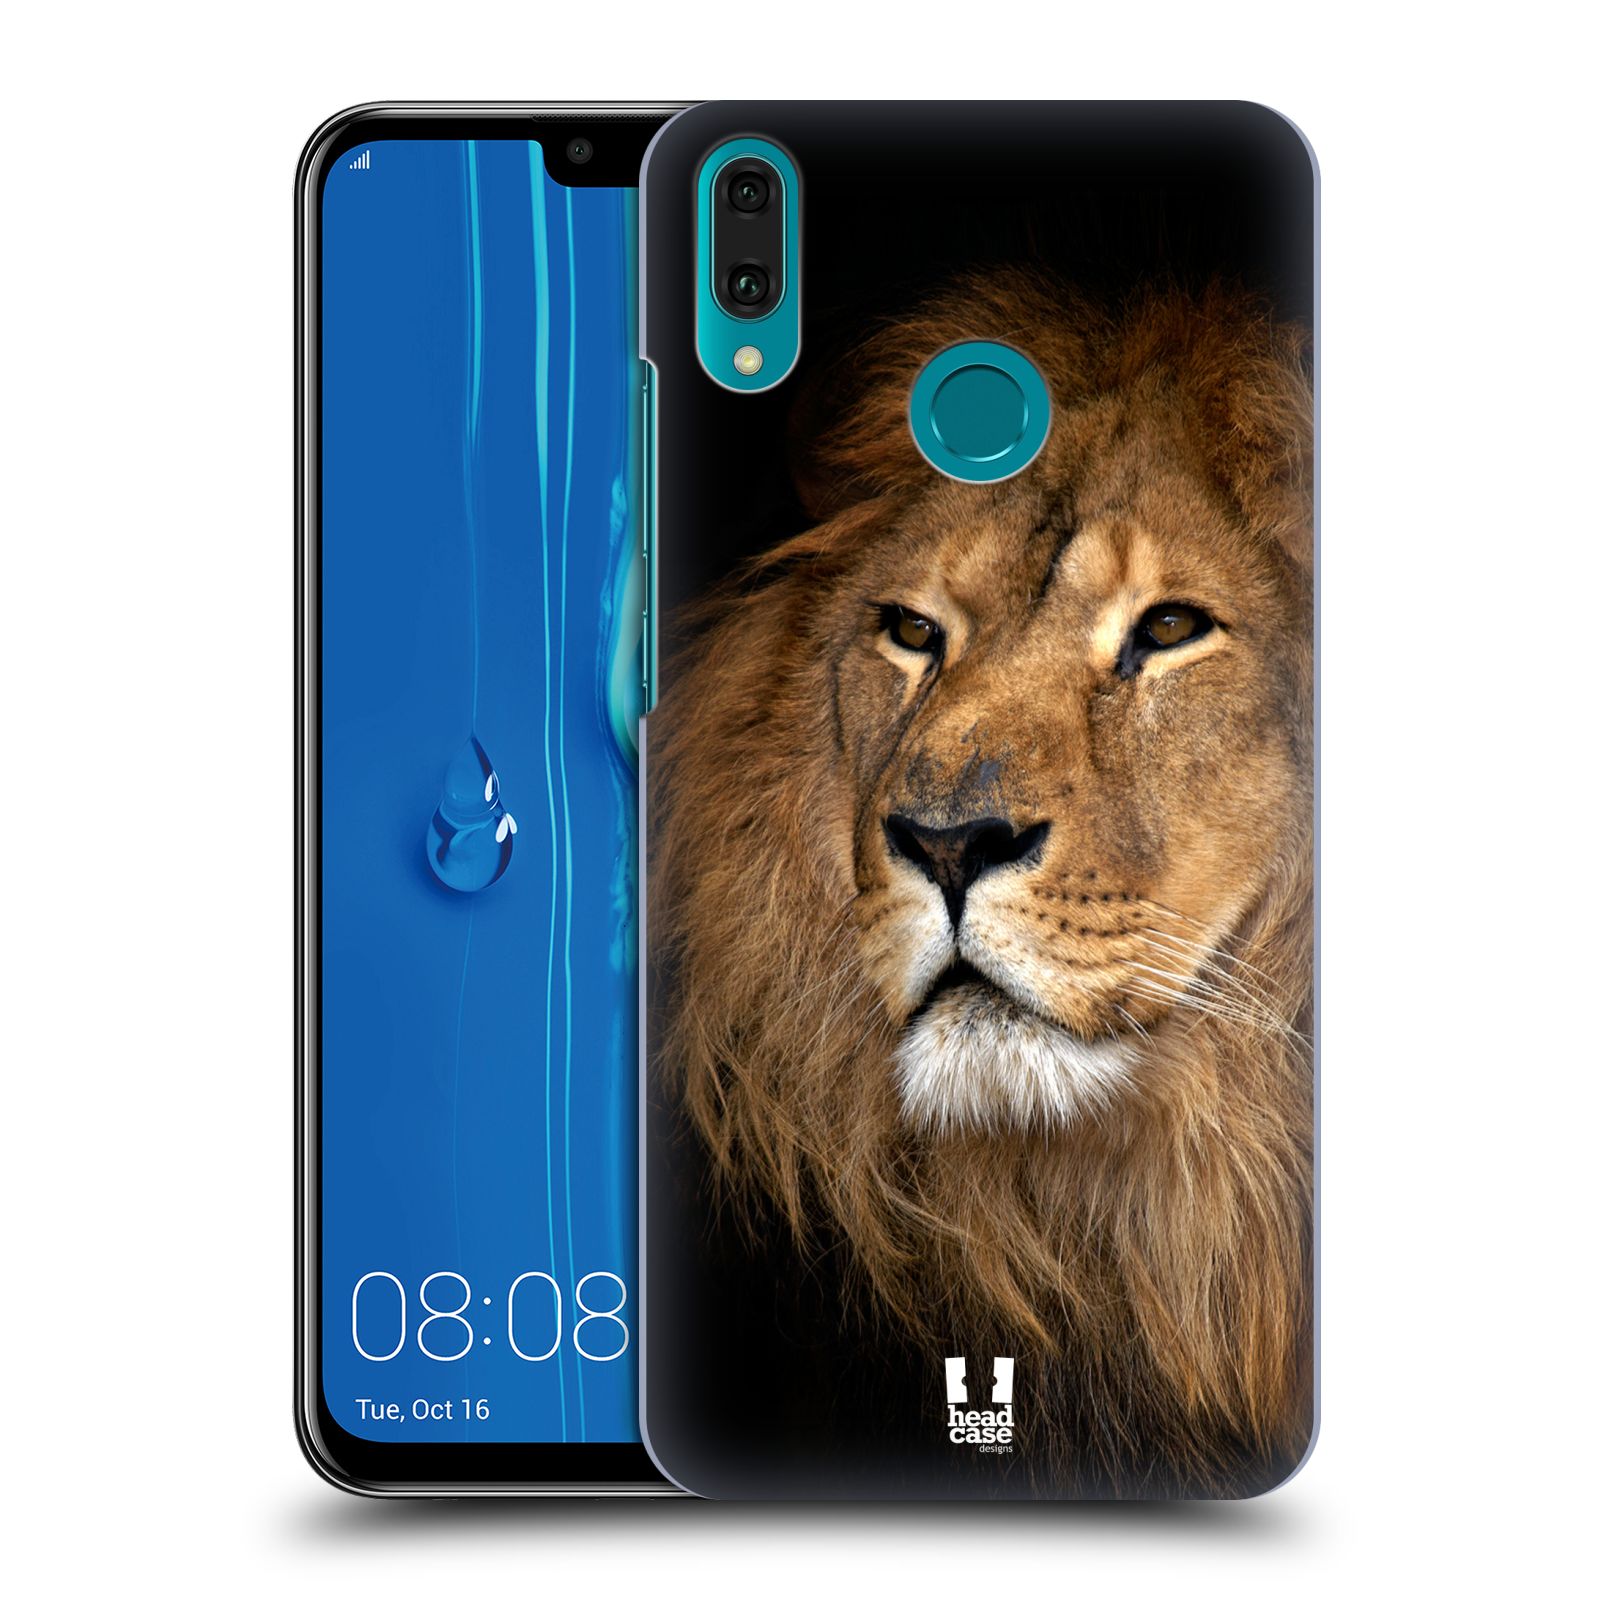 Pouzdro na mobil Huawei Y9 2019 - HEAD CASE - vzor Divočina, Divoký život a zvířata foto LEV KRÁL ZVÍŘAT